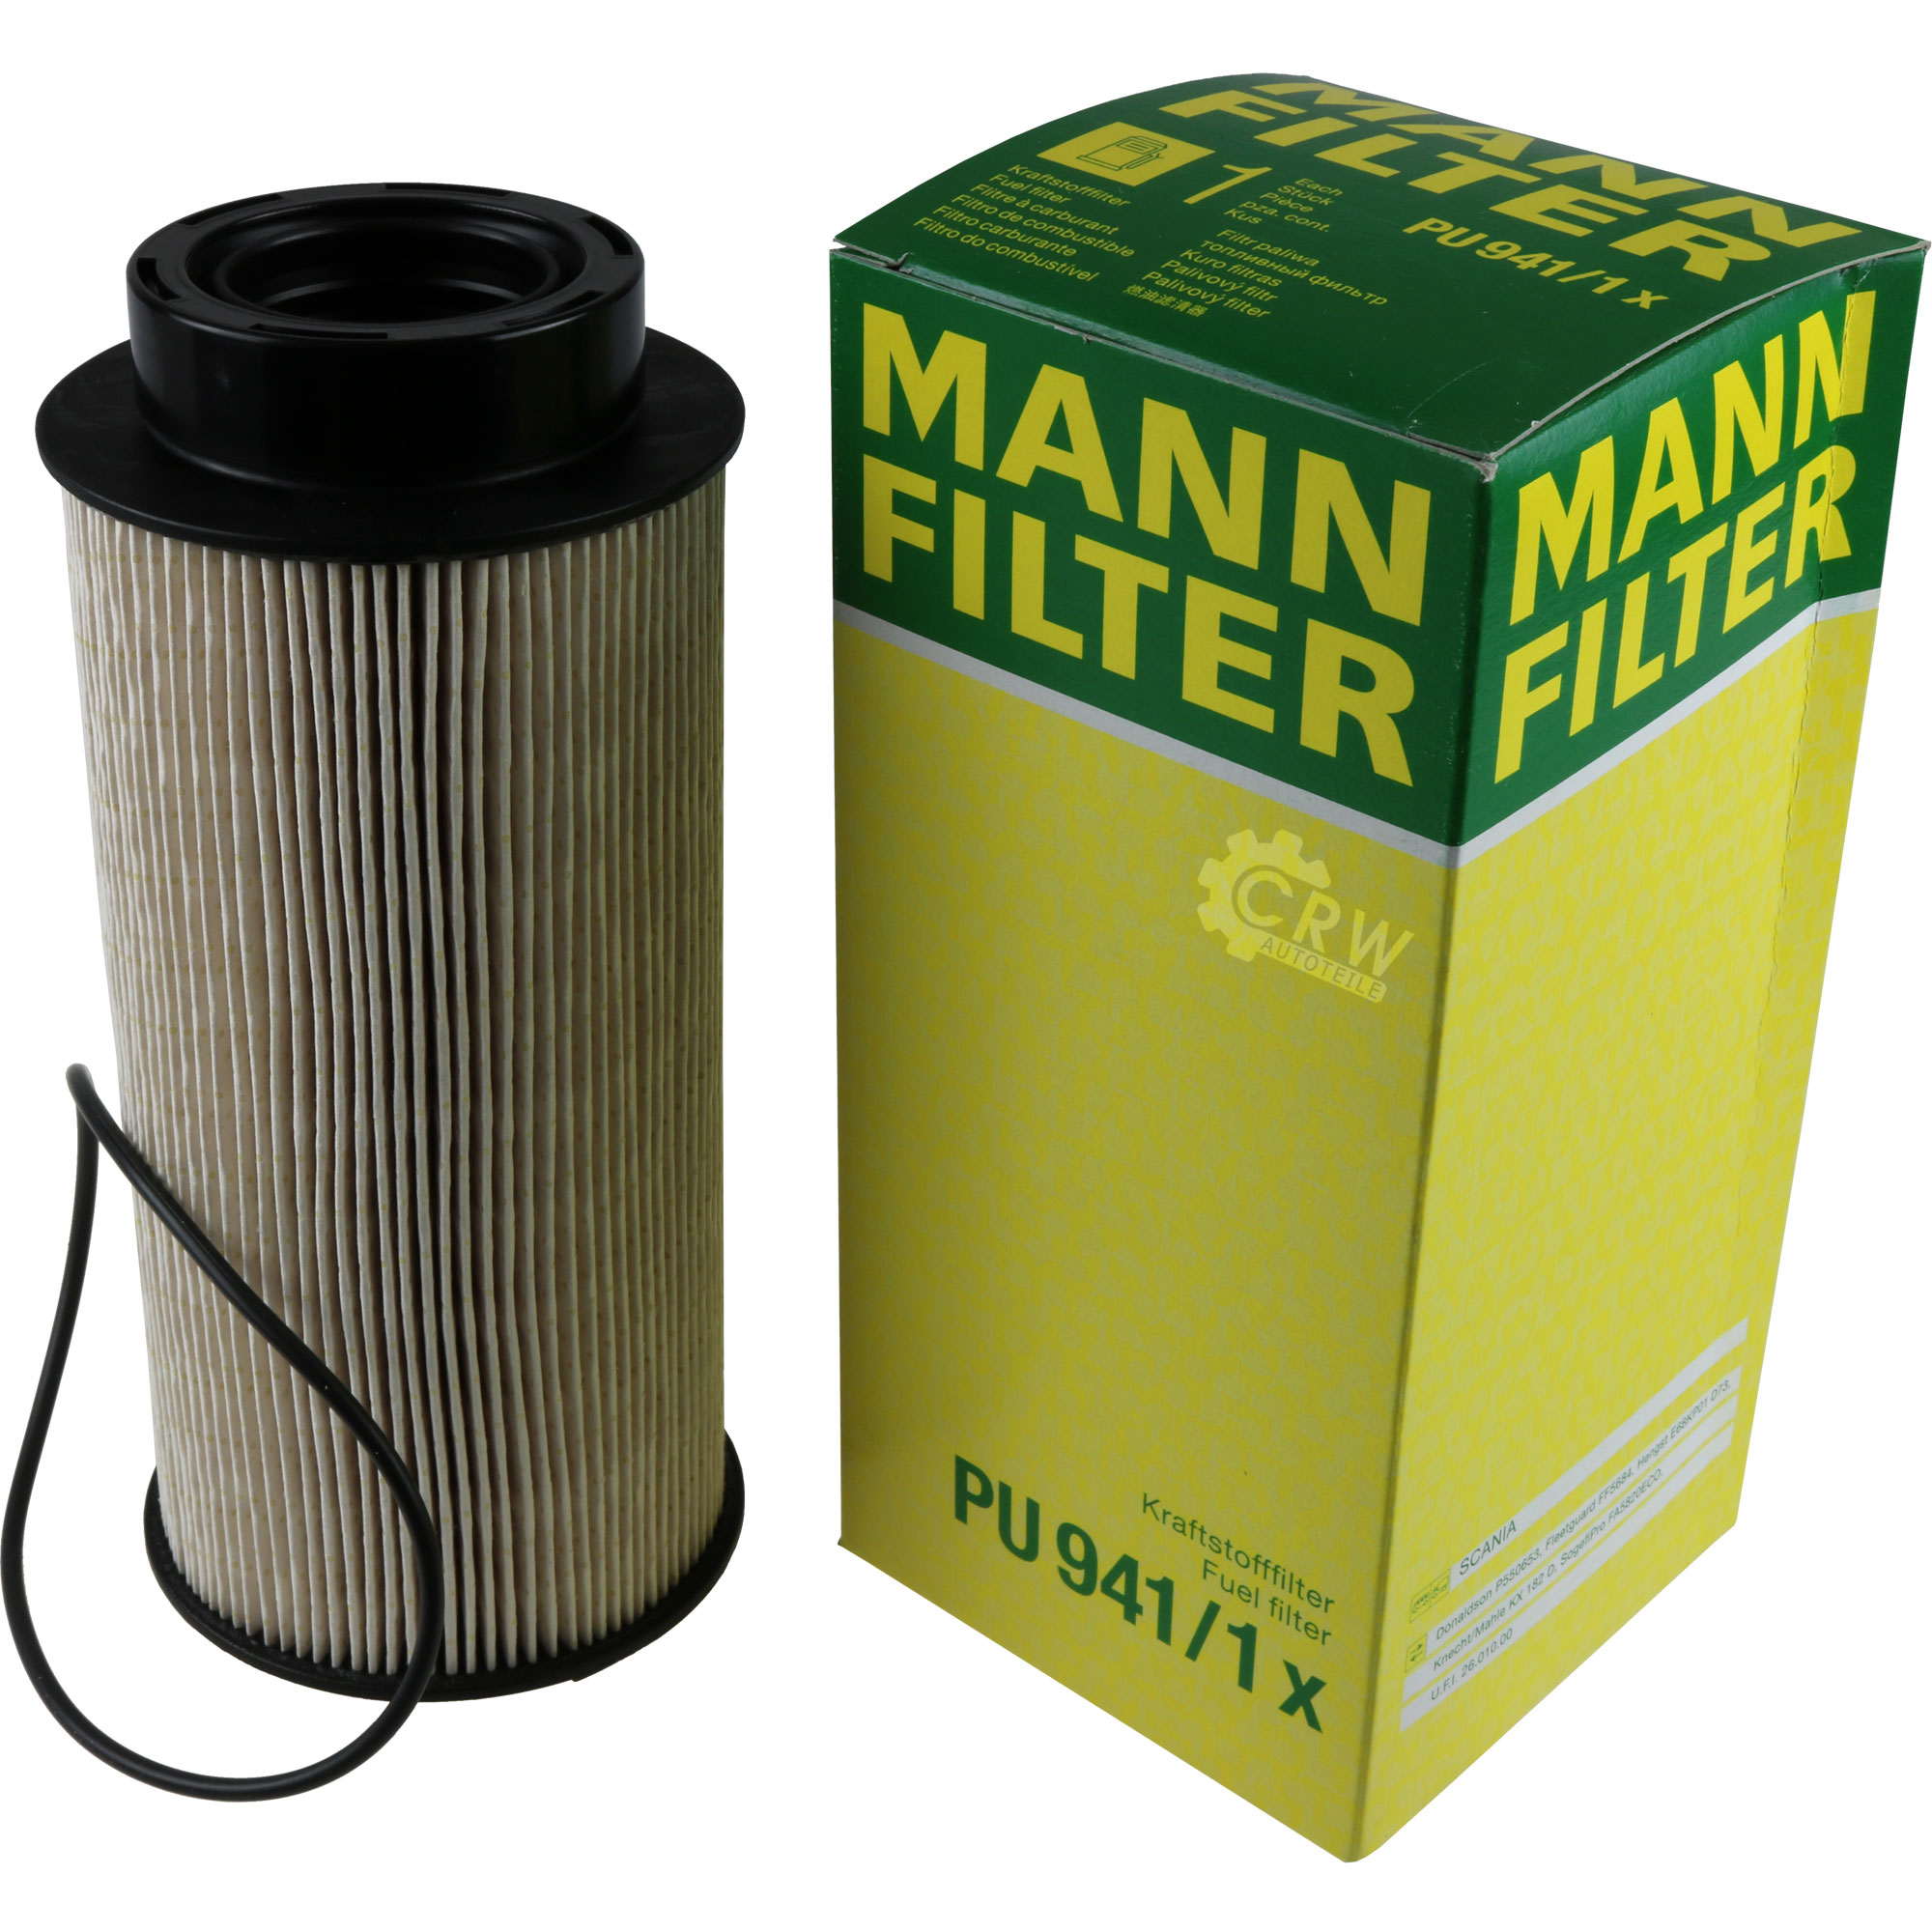 MANN-FILTER Kraftstofffilter PU 941/1 x Fuel Filter